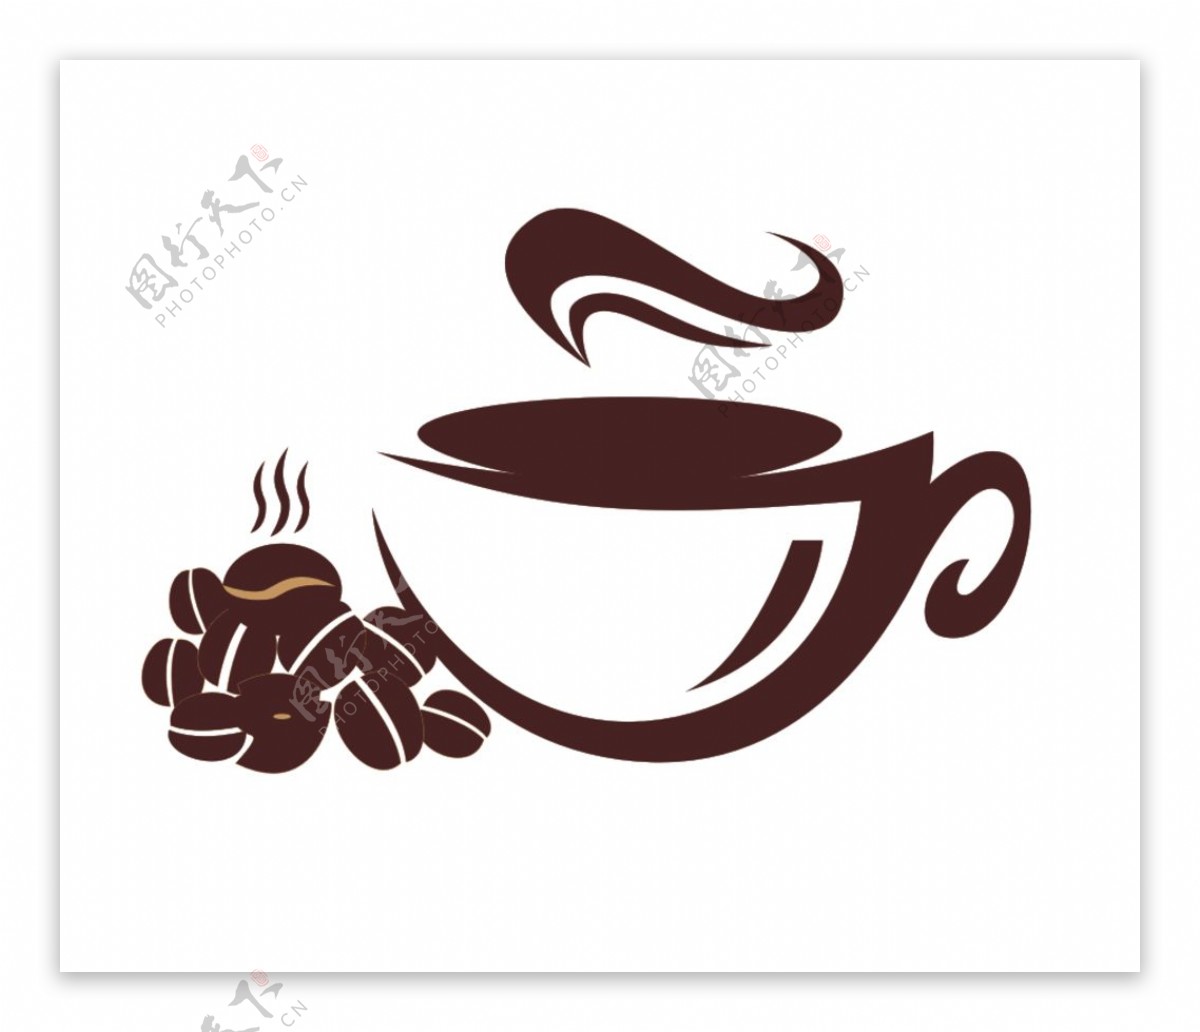 咖啡logo标签瓶贴